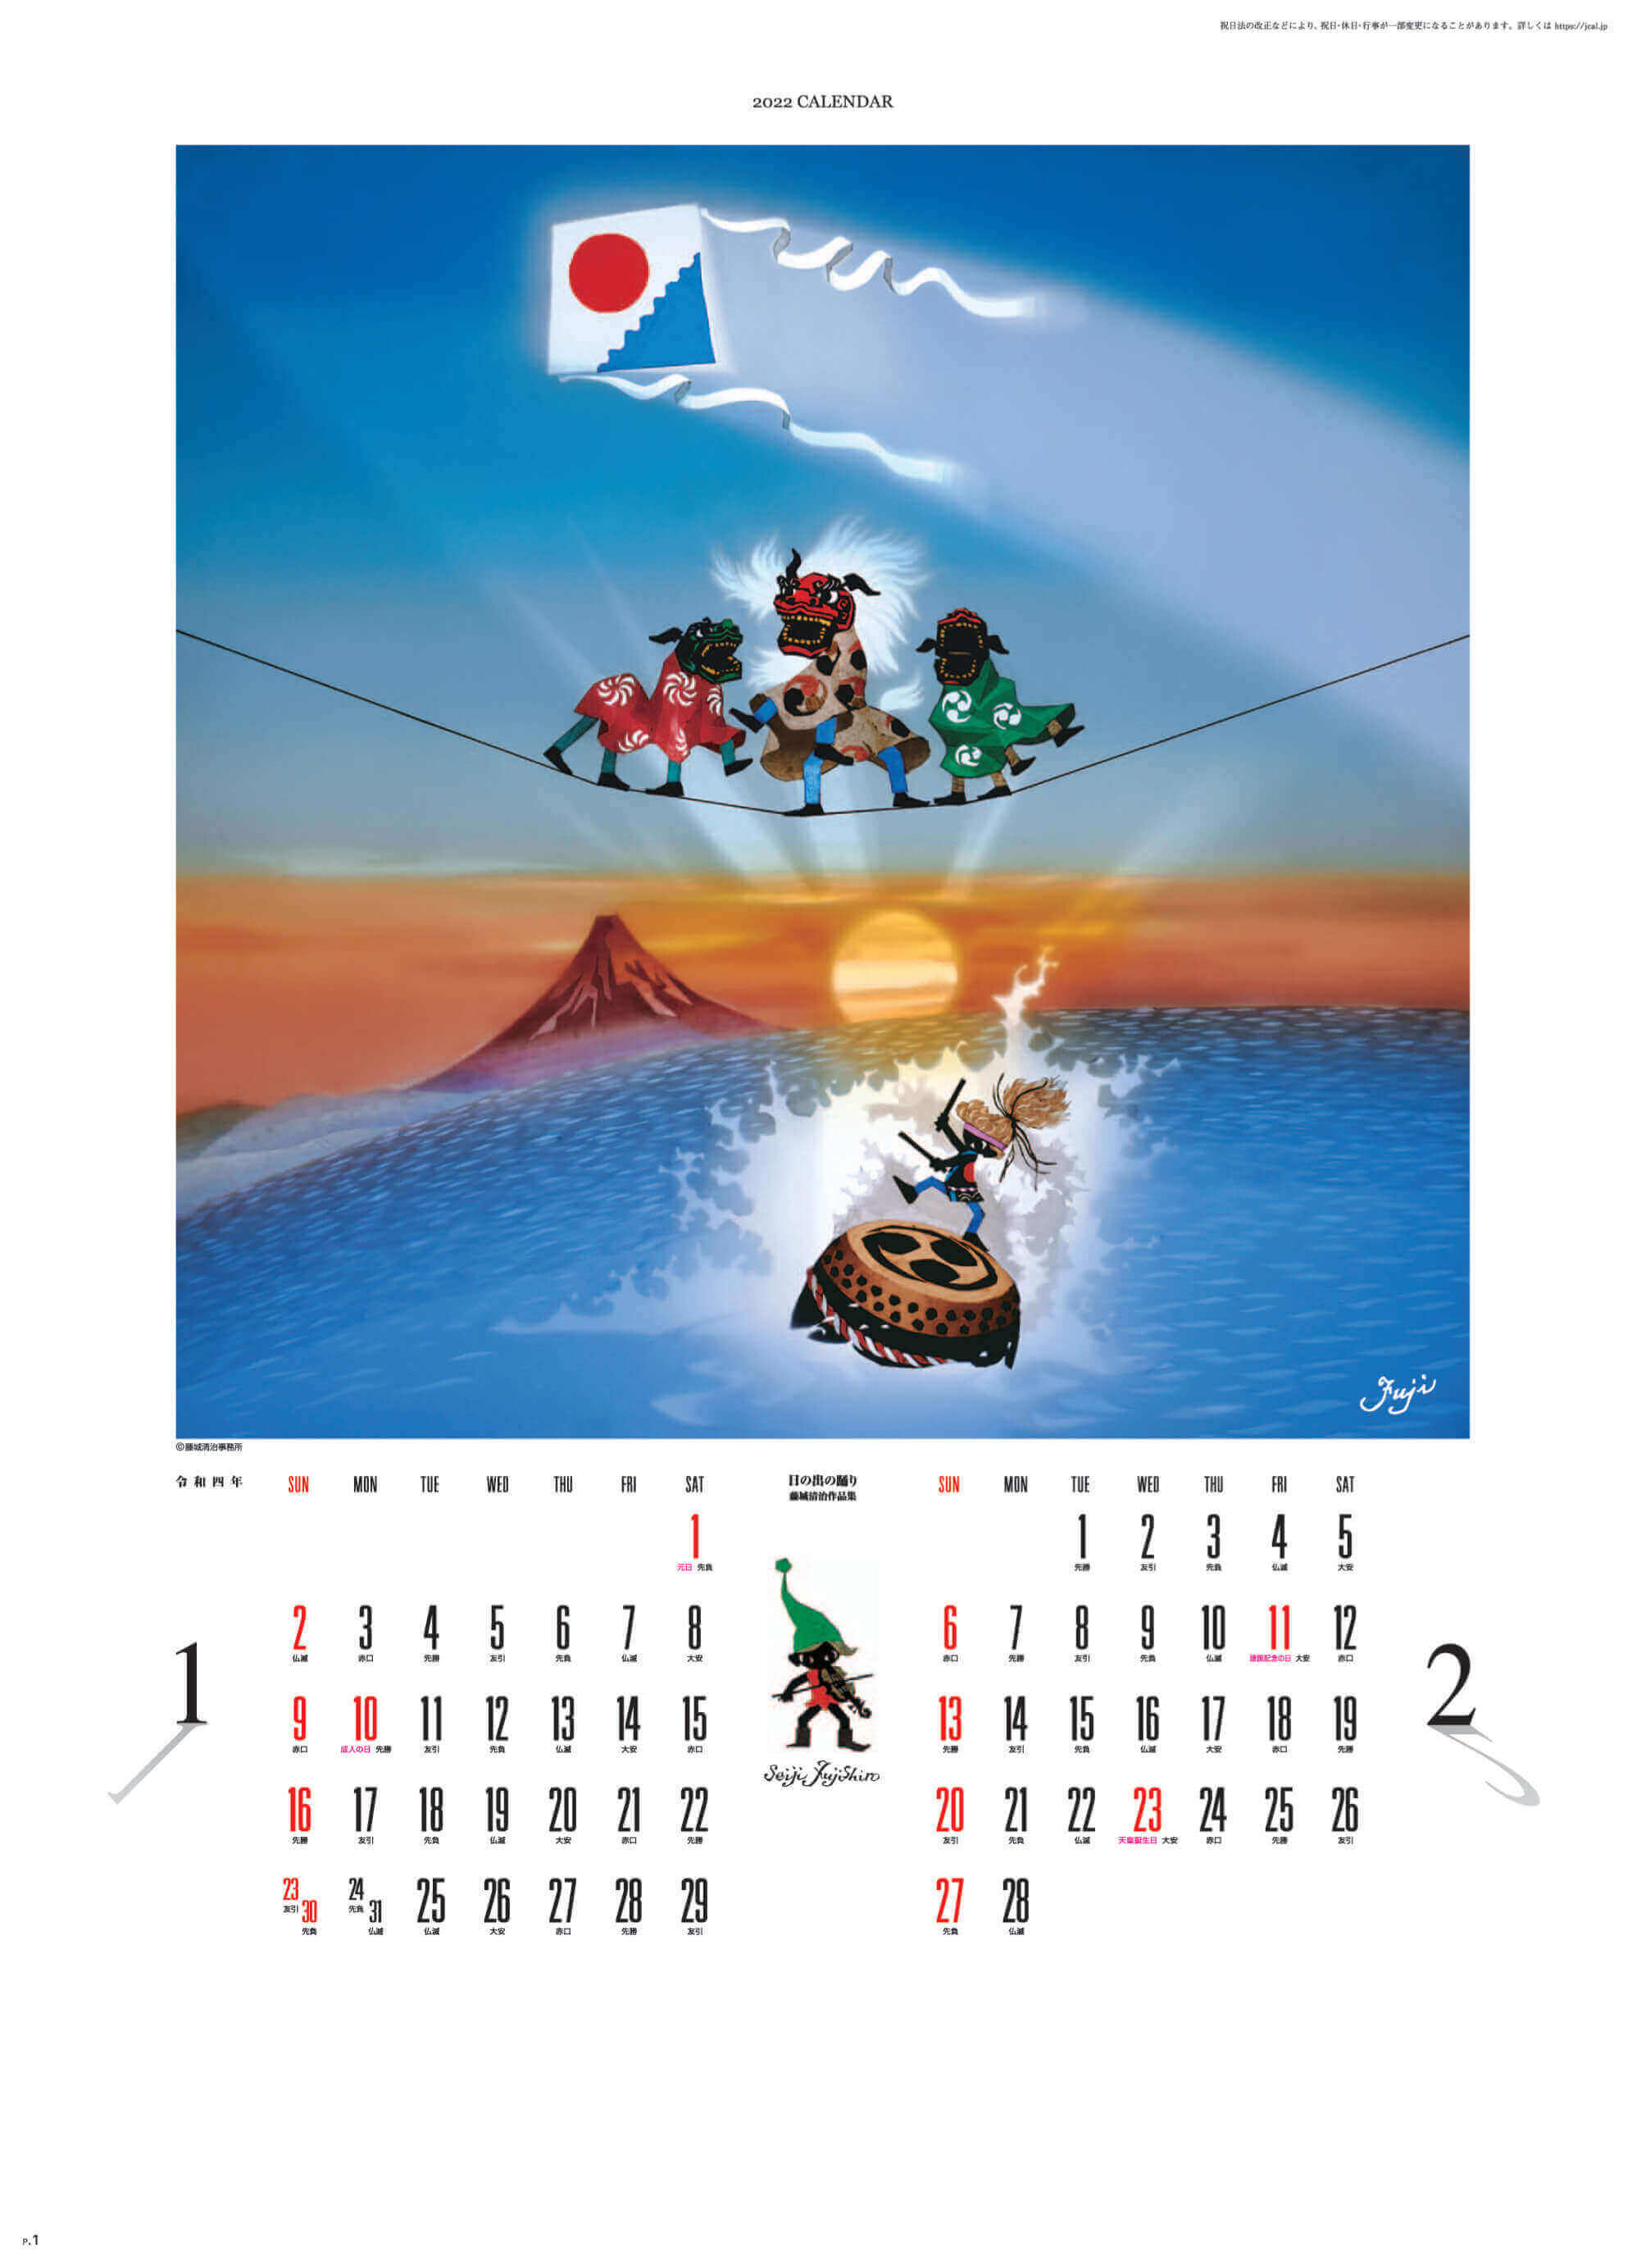 2023年カレンダーの通販サイト				SG-405 遠い日の風景から(影絵) 藤城清治 影絵 2023年カレンダー				日本全国送料無料でお届けいたします！ ApplePay/GooglePayに対応！